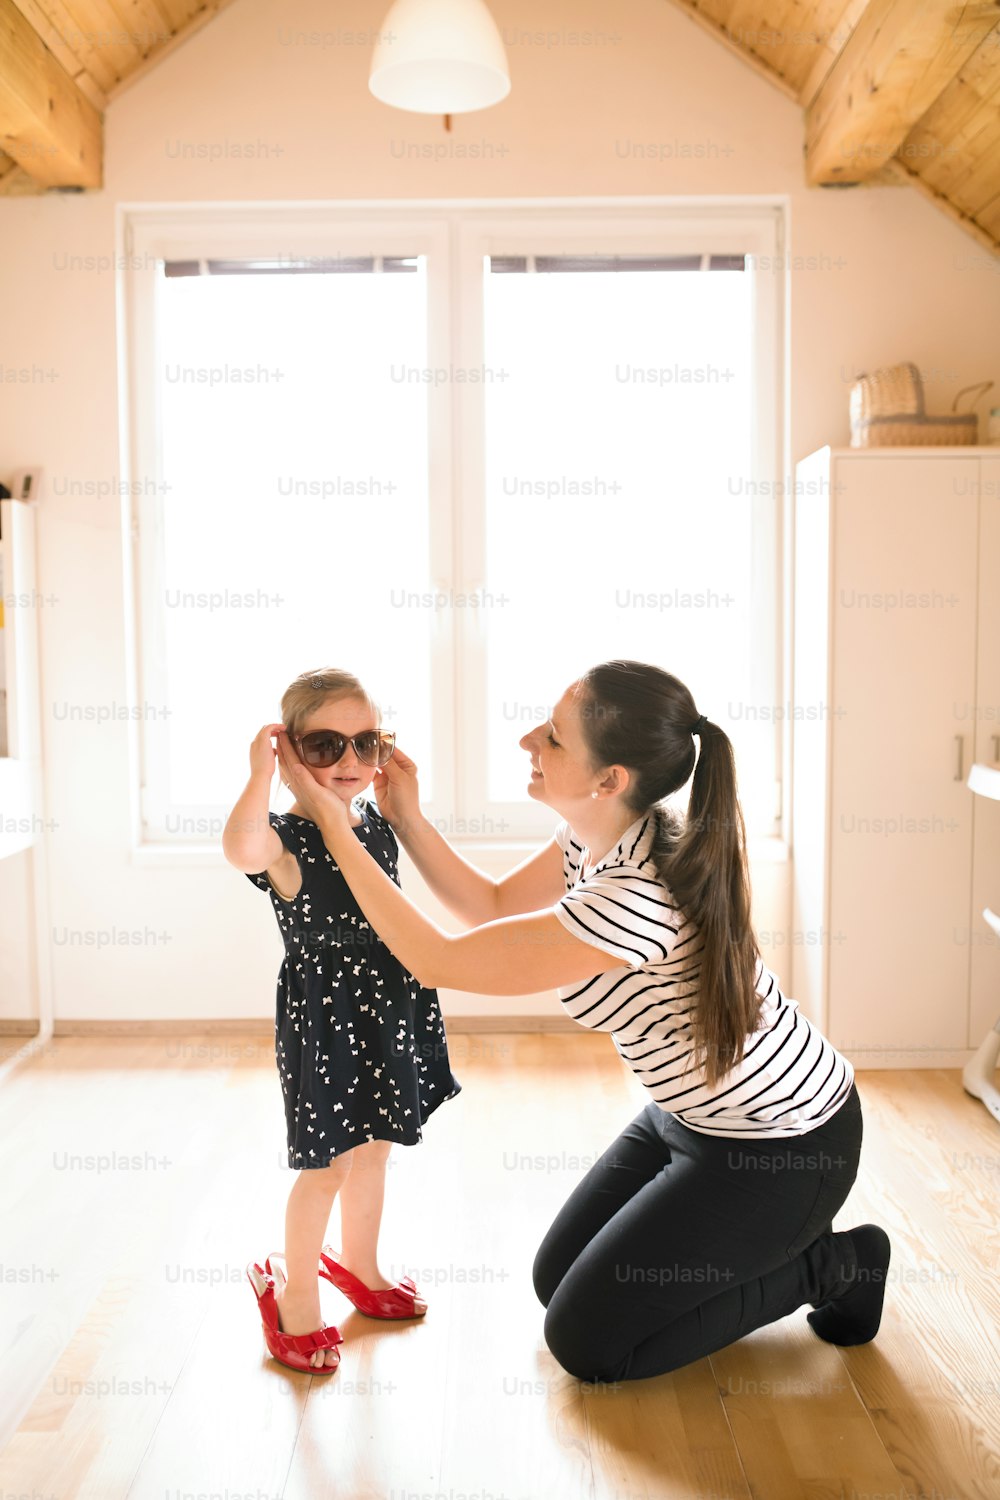 Belle jeune maman met des lunettes de soleil à sa jolie petite fille.